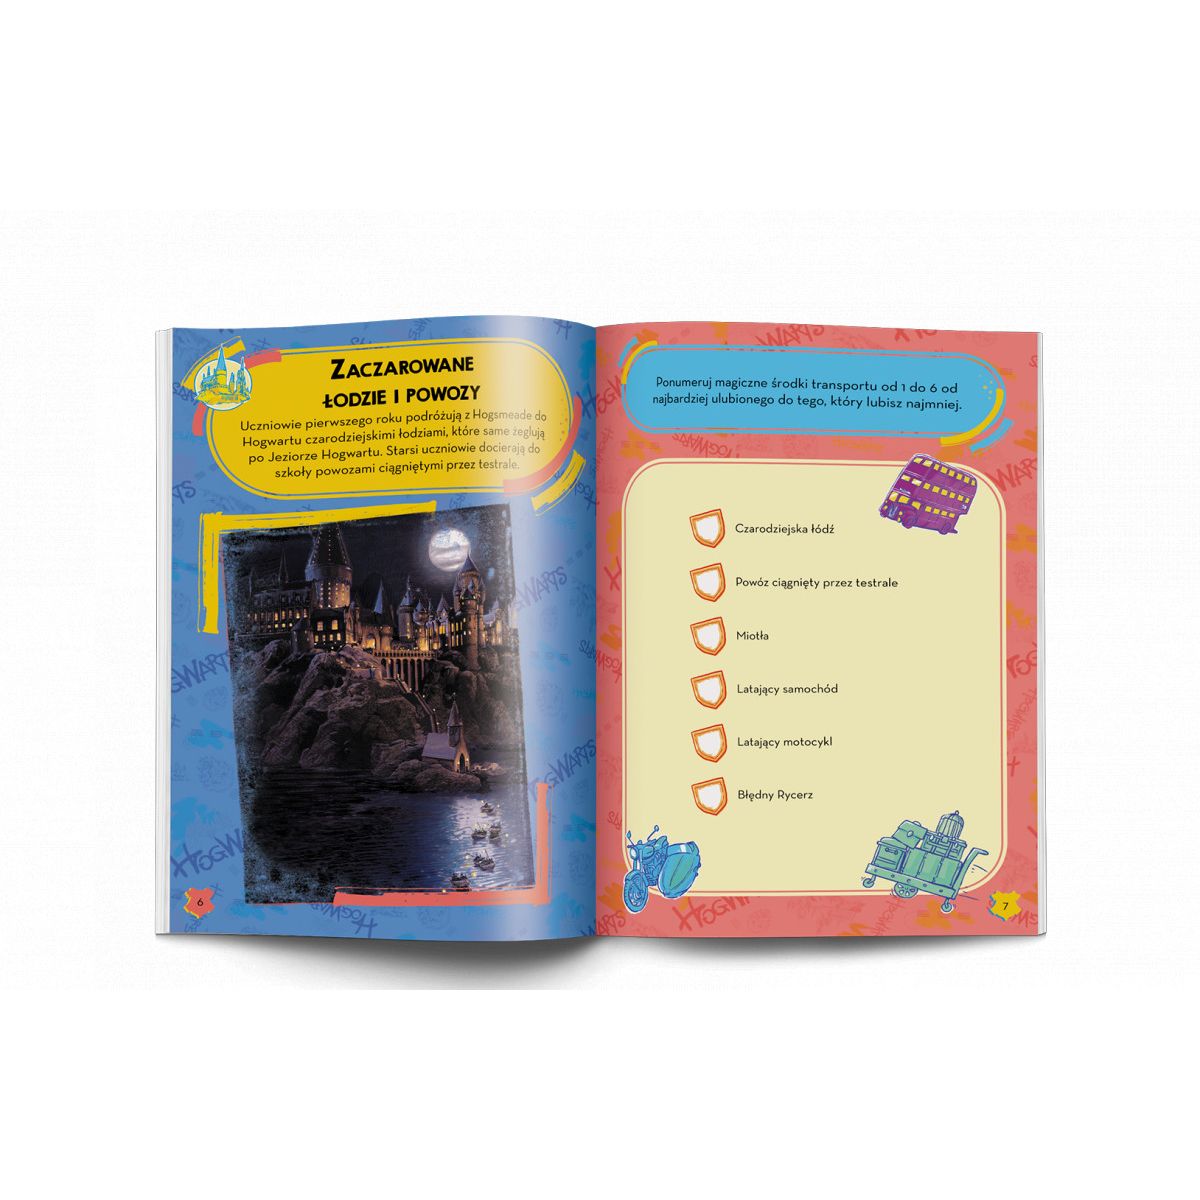 Książka dla dzieci WIZARDING WORLD™. ODKRYJ HOGWART! Ameet (HCA 5101)